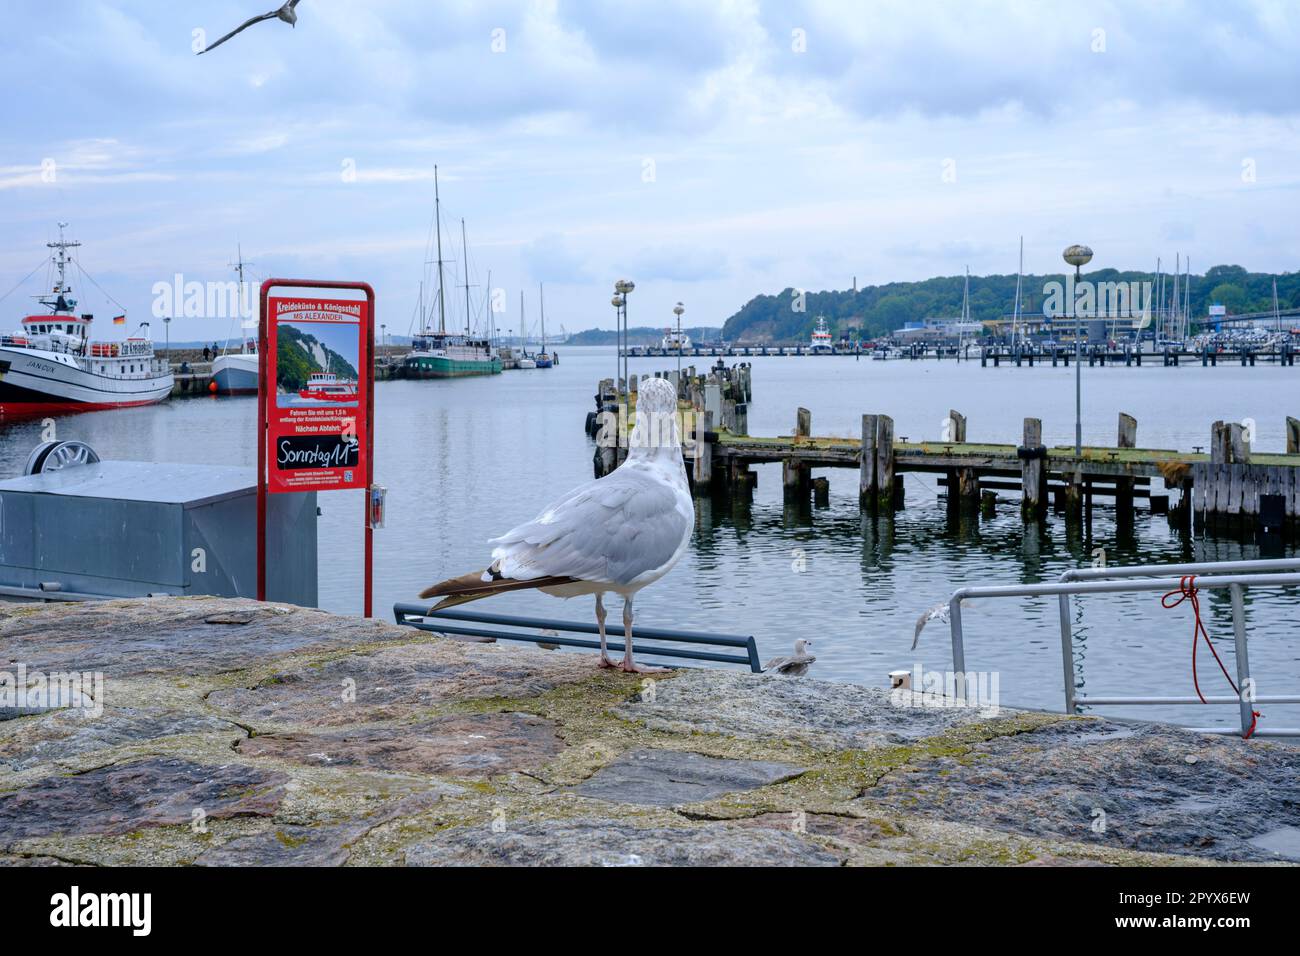 Maritime Szene im Stadthafen Sassnitz, Mecklenburg-Vorpommern, Insel Rugen, Deutschland, Europa. Stockfoto